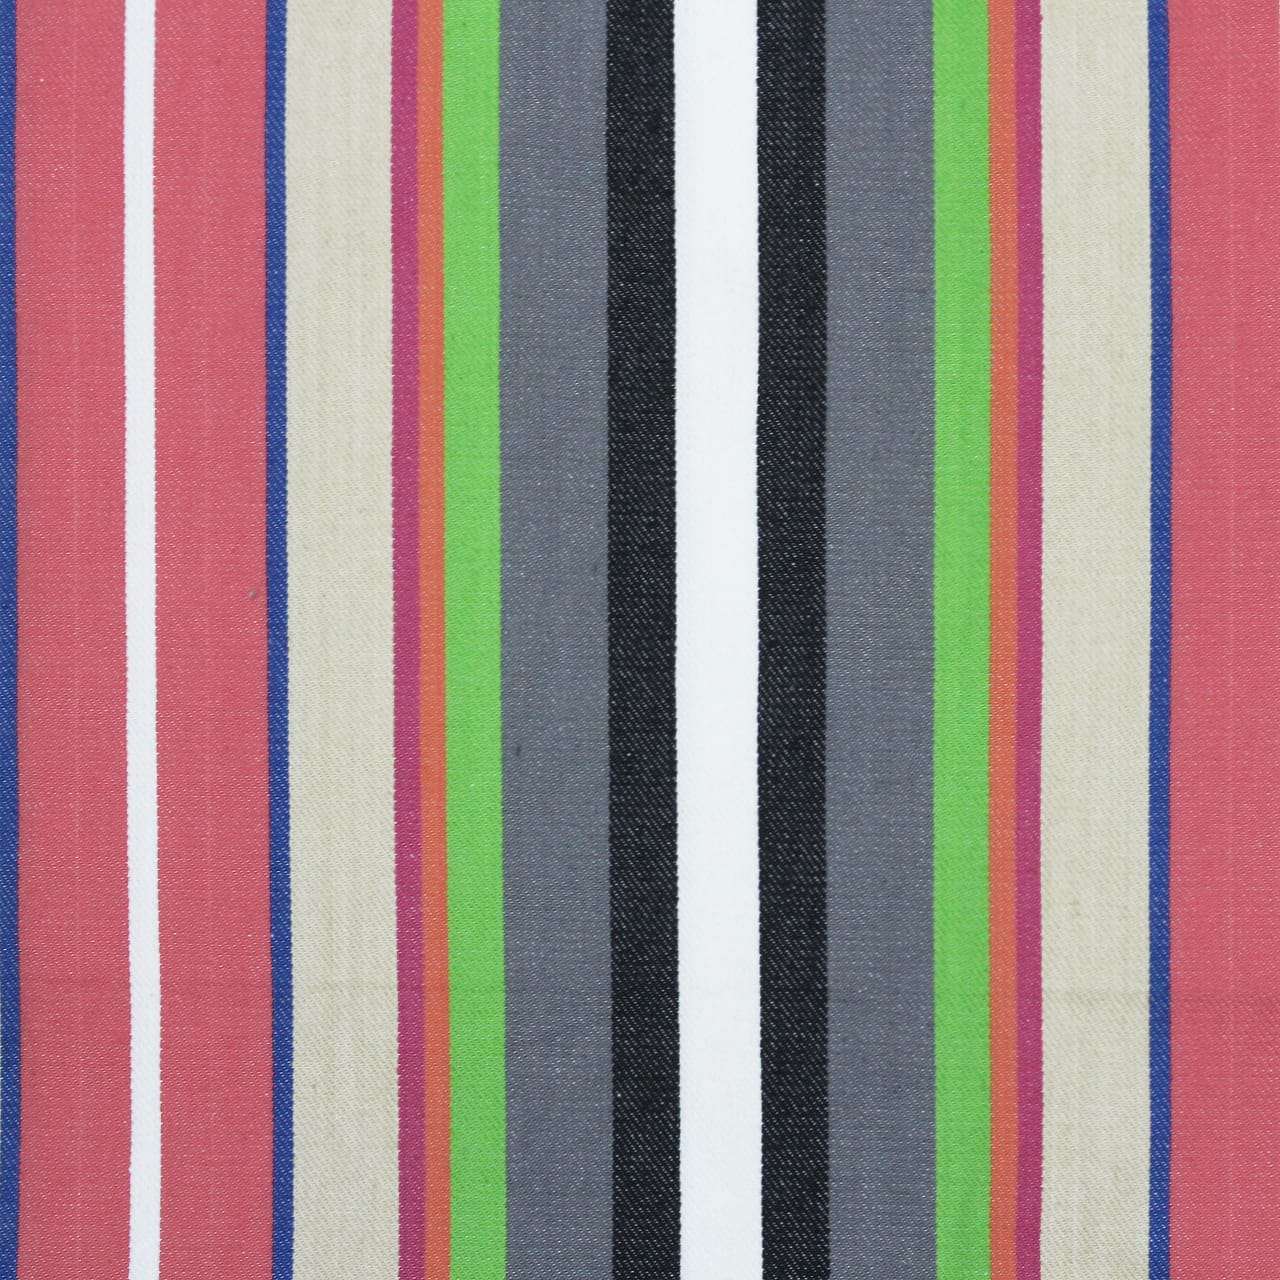 ALPHA Woven Cotton Stripes 2 Pcs Bolster Cover set - Multicolor